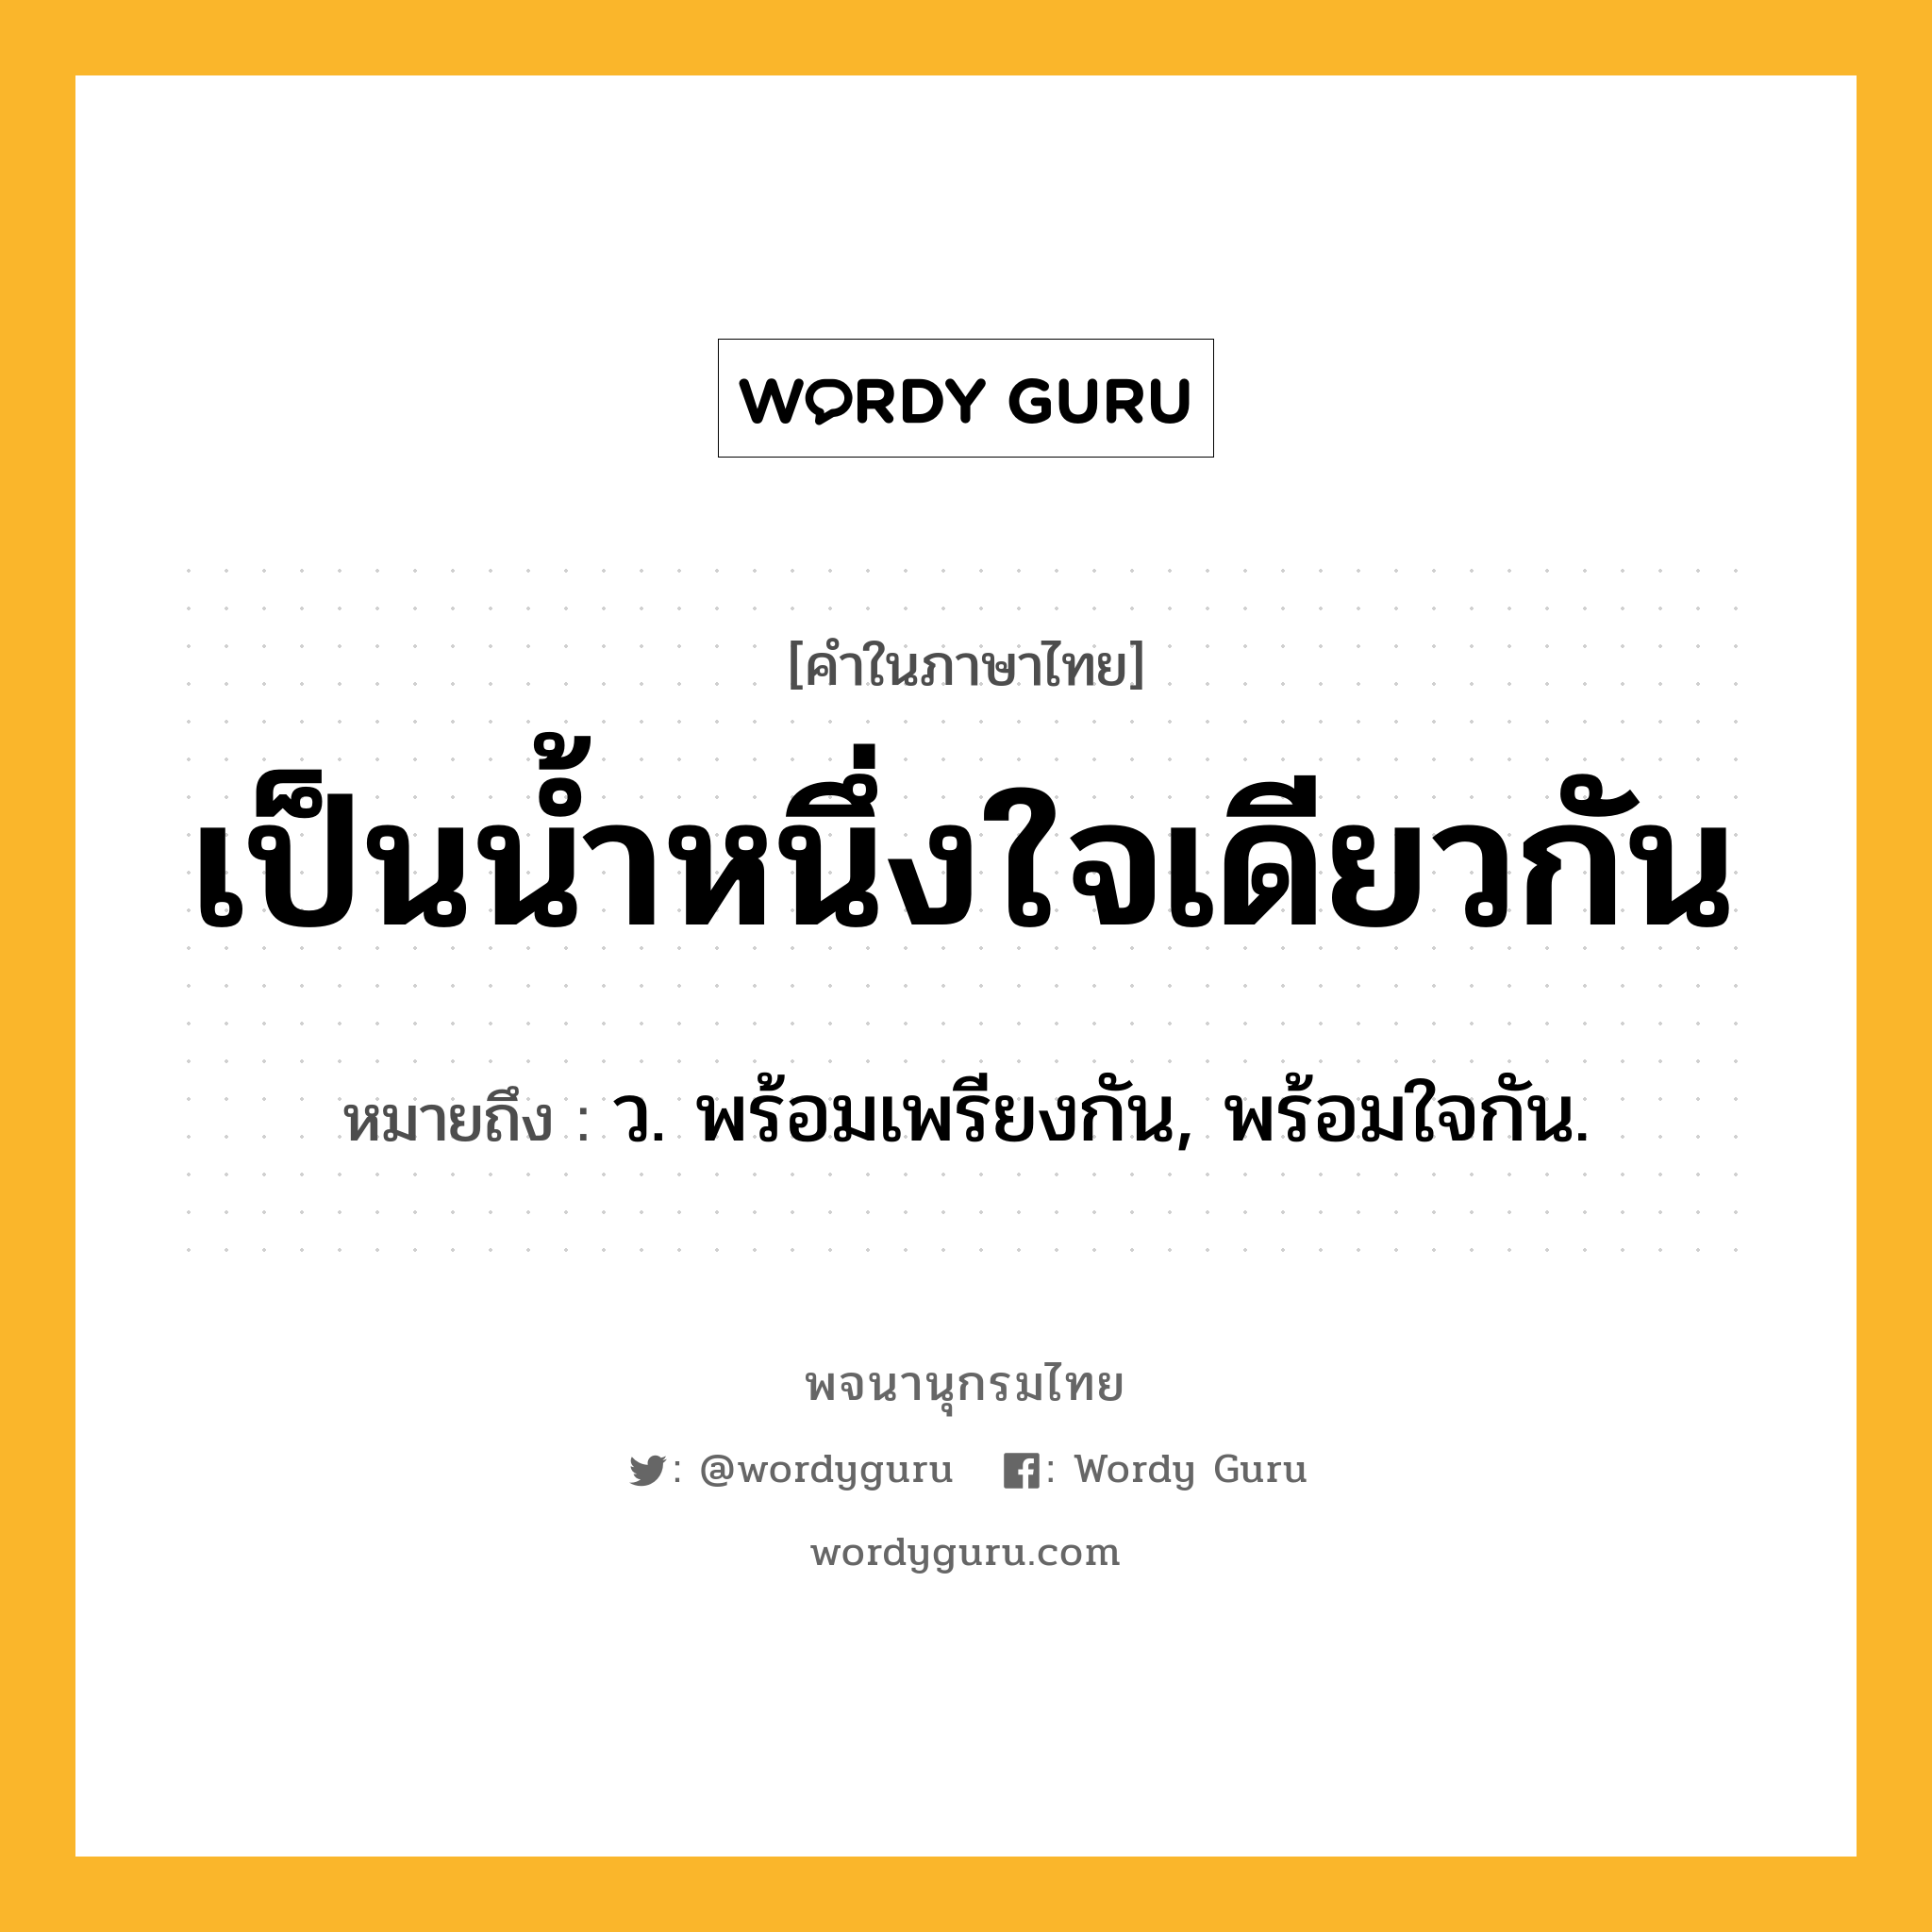 เป็นน้ำหนึ่งใจเดียวกัน หมายถึงอะไร?, คำในภาษาไทย เป็นน้ำหนึ่งใจเดียวกัน หมายถึง ว. พร้อมเพรียงกัน, พร้อมใจกัน.